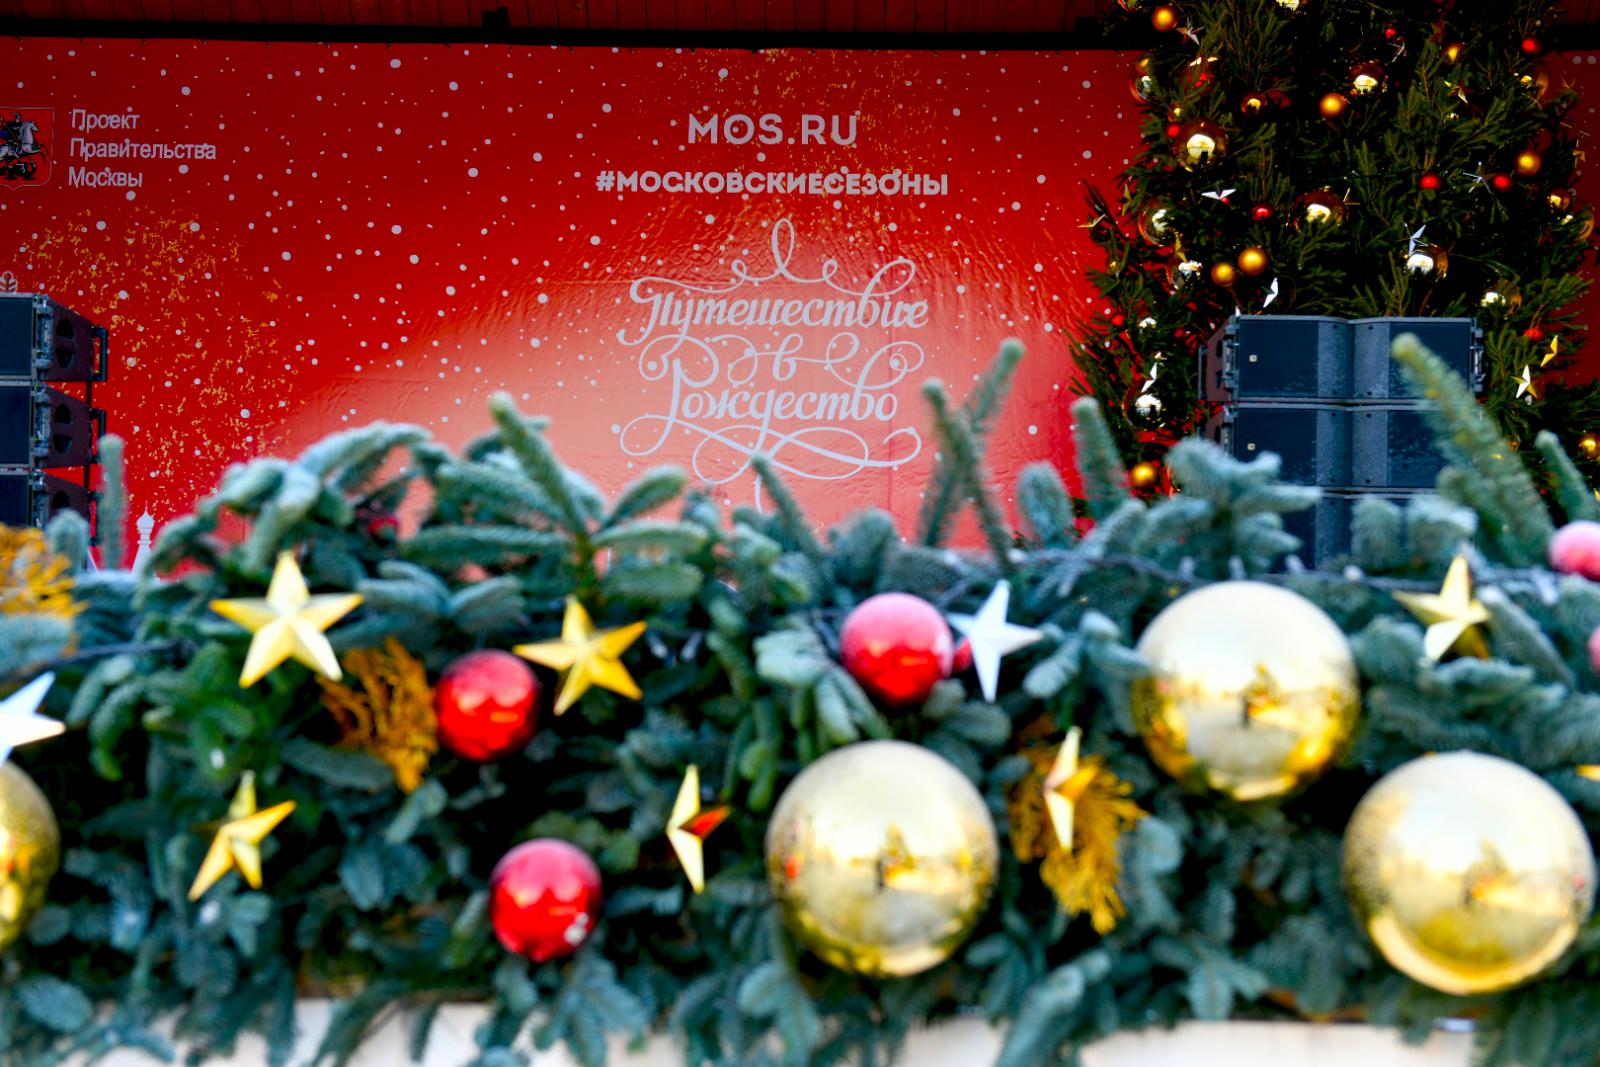 Фестиваль «Путешествие в Рождество» пройдет в Москве с 10 декабря по 9 января